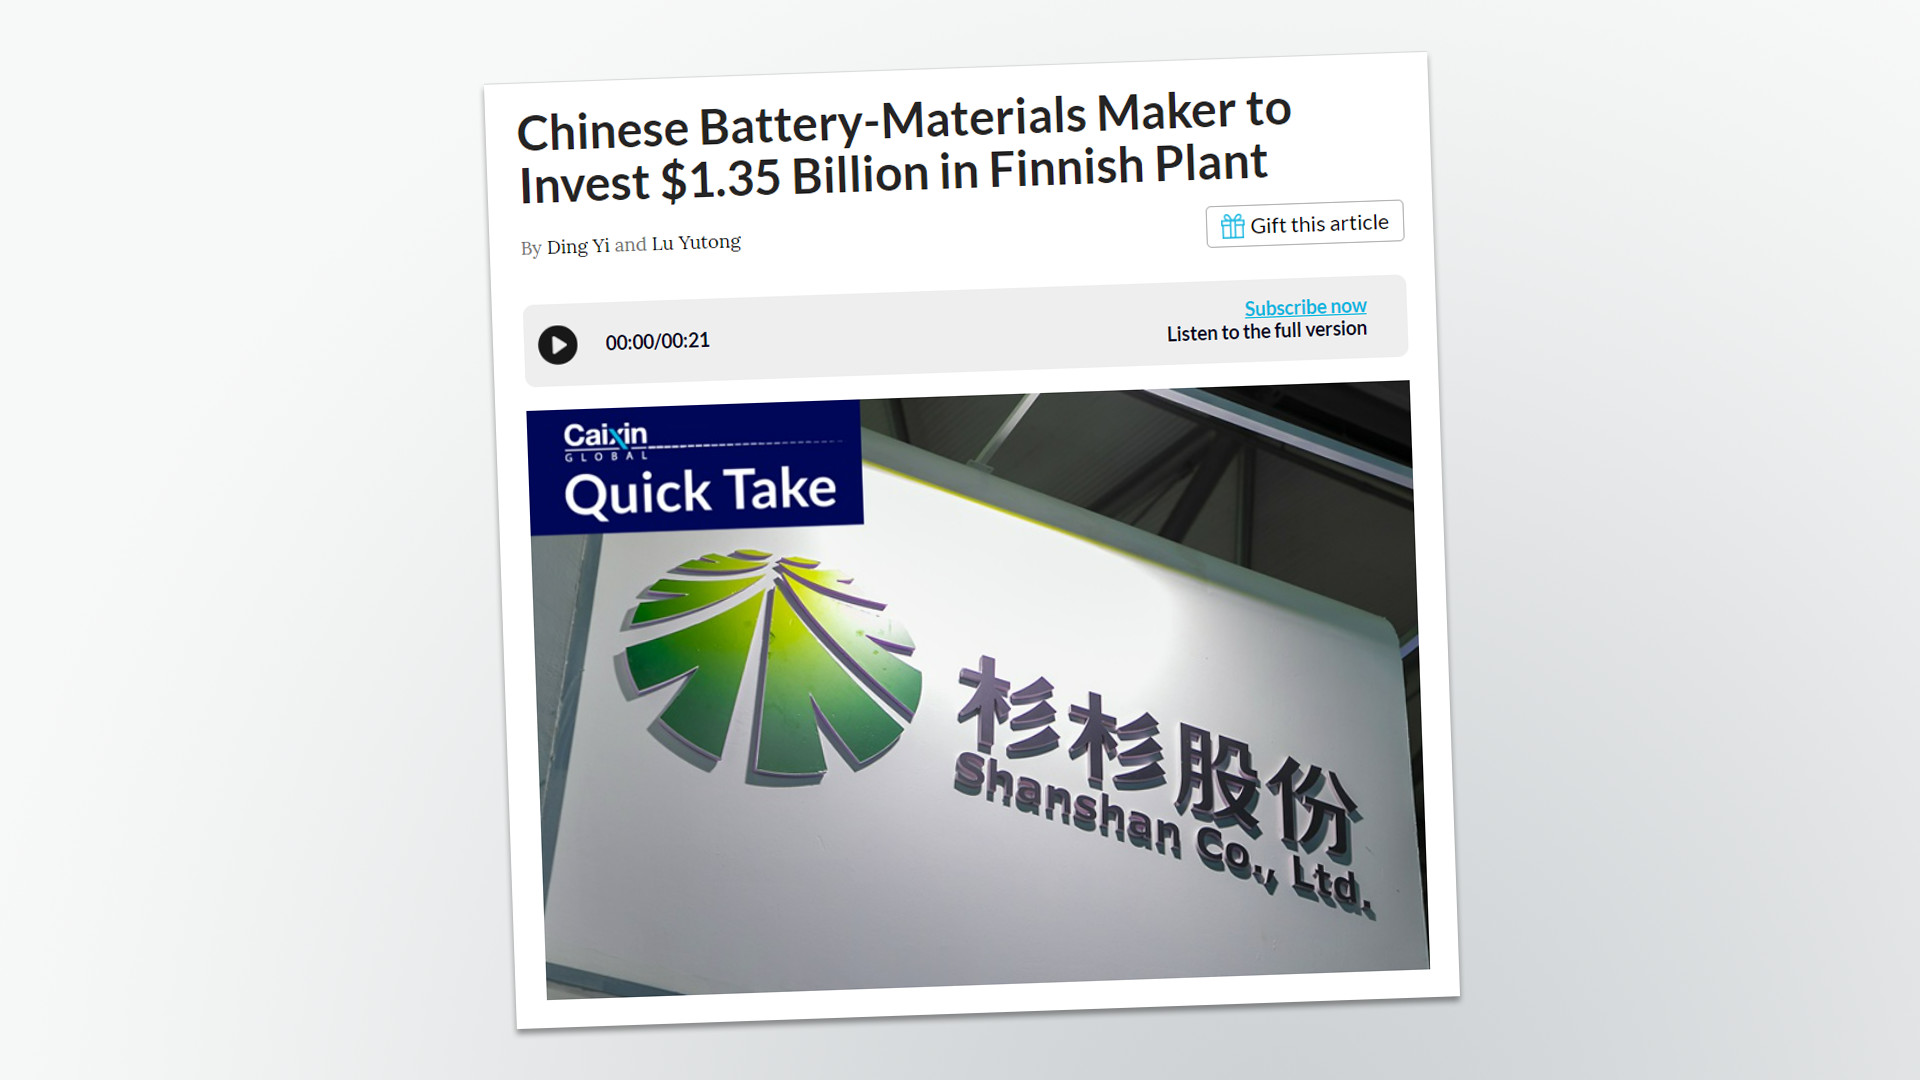 Una empresa china construye en Finlandia una fábrica de material para baterías por valor de 1.3 millones de euros